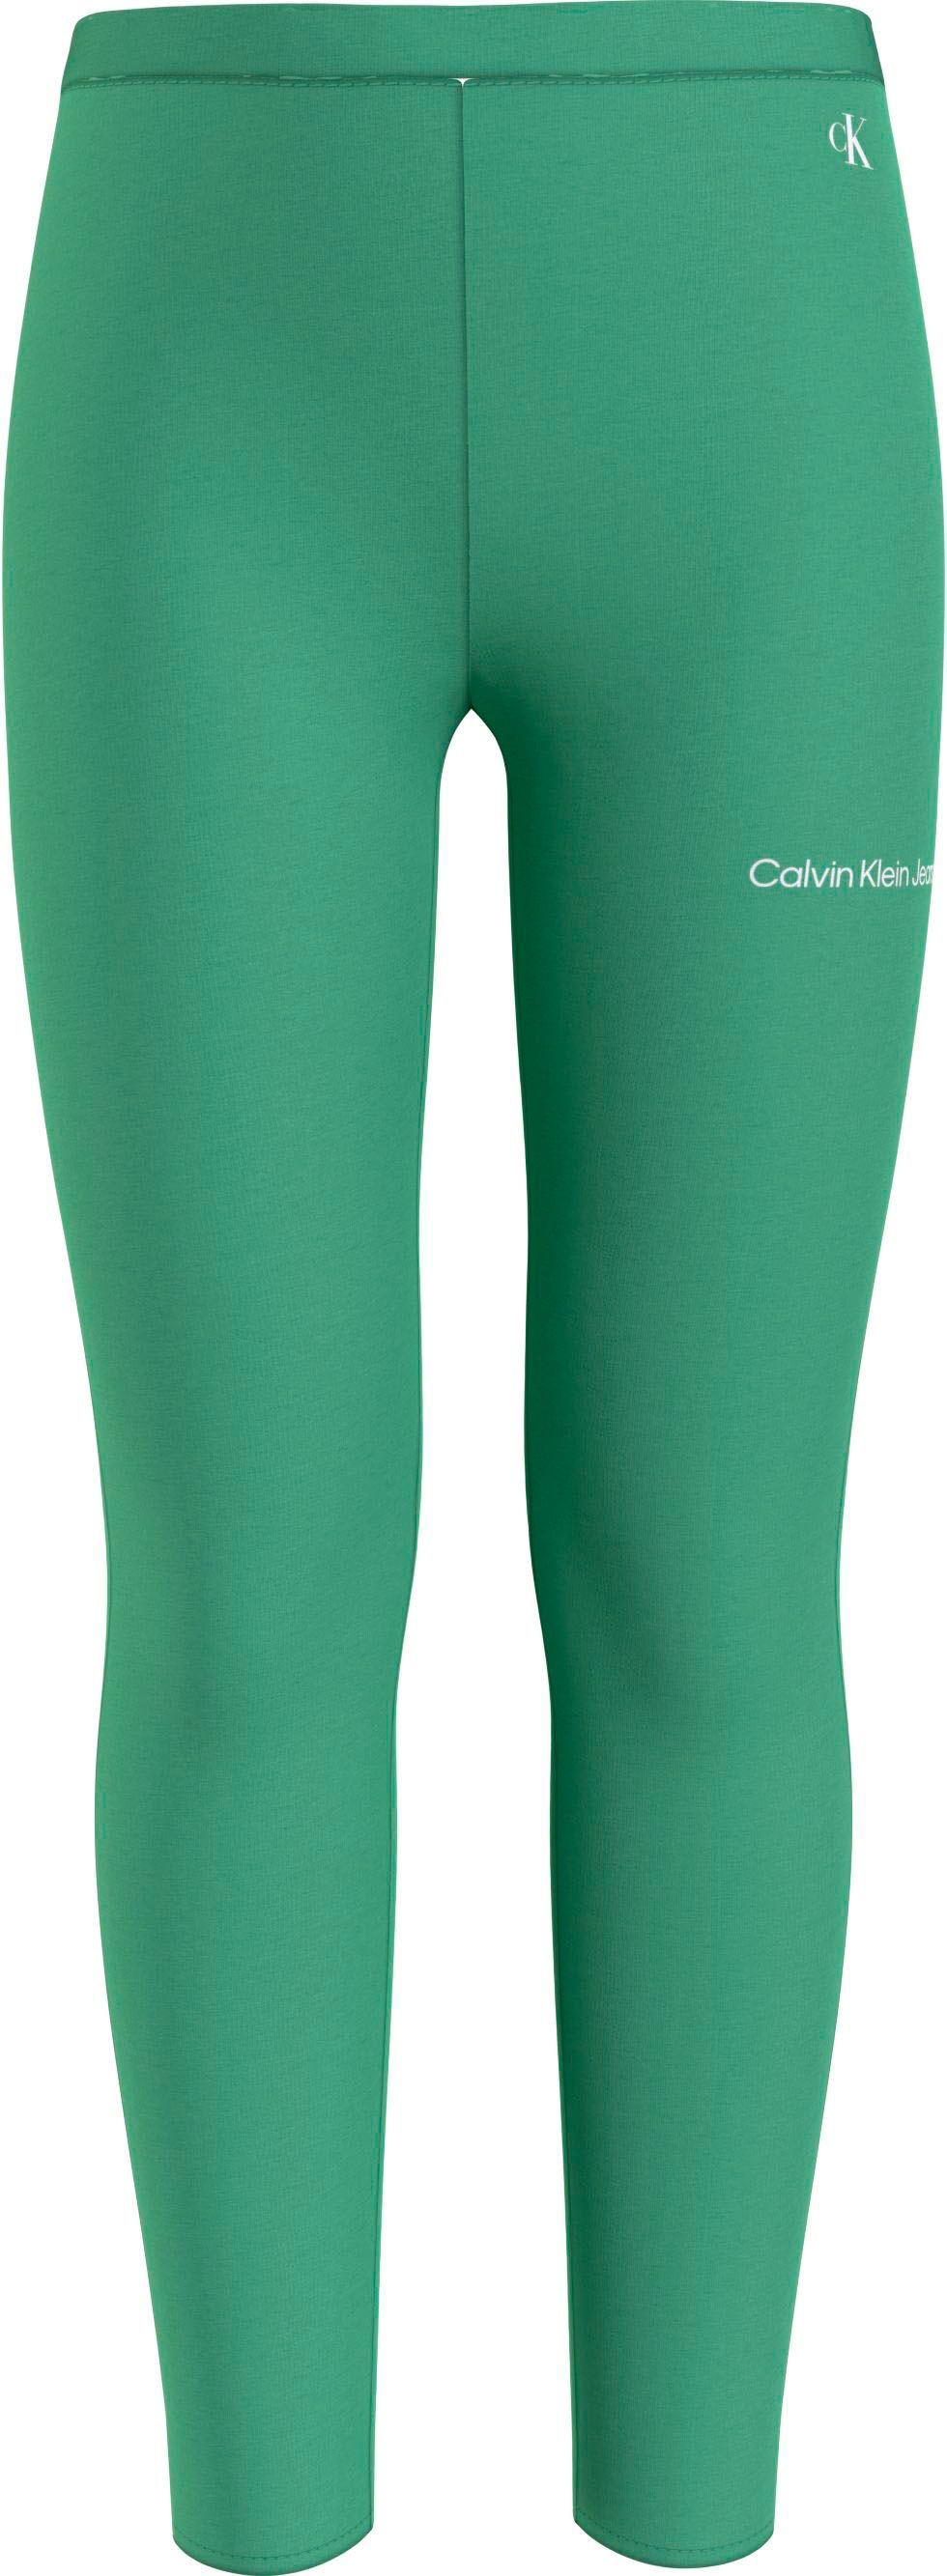 Klein Logoschriftzug kaufen Junior Bein versandkostenfrei dem Trendige Calvin Klein MiniMe,mit auf Jeans Leggings, Kinder Calvin Kids